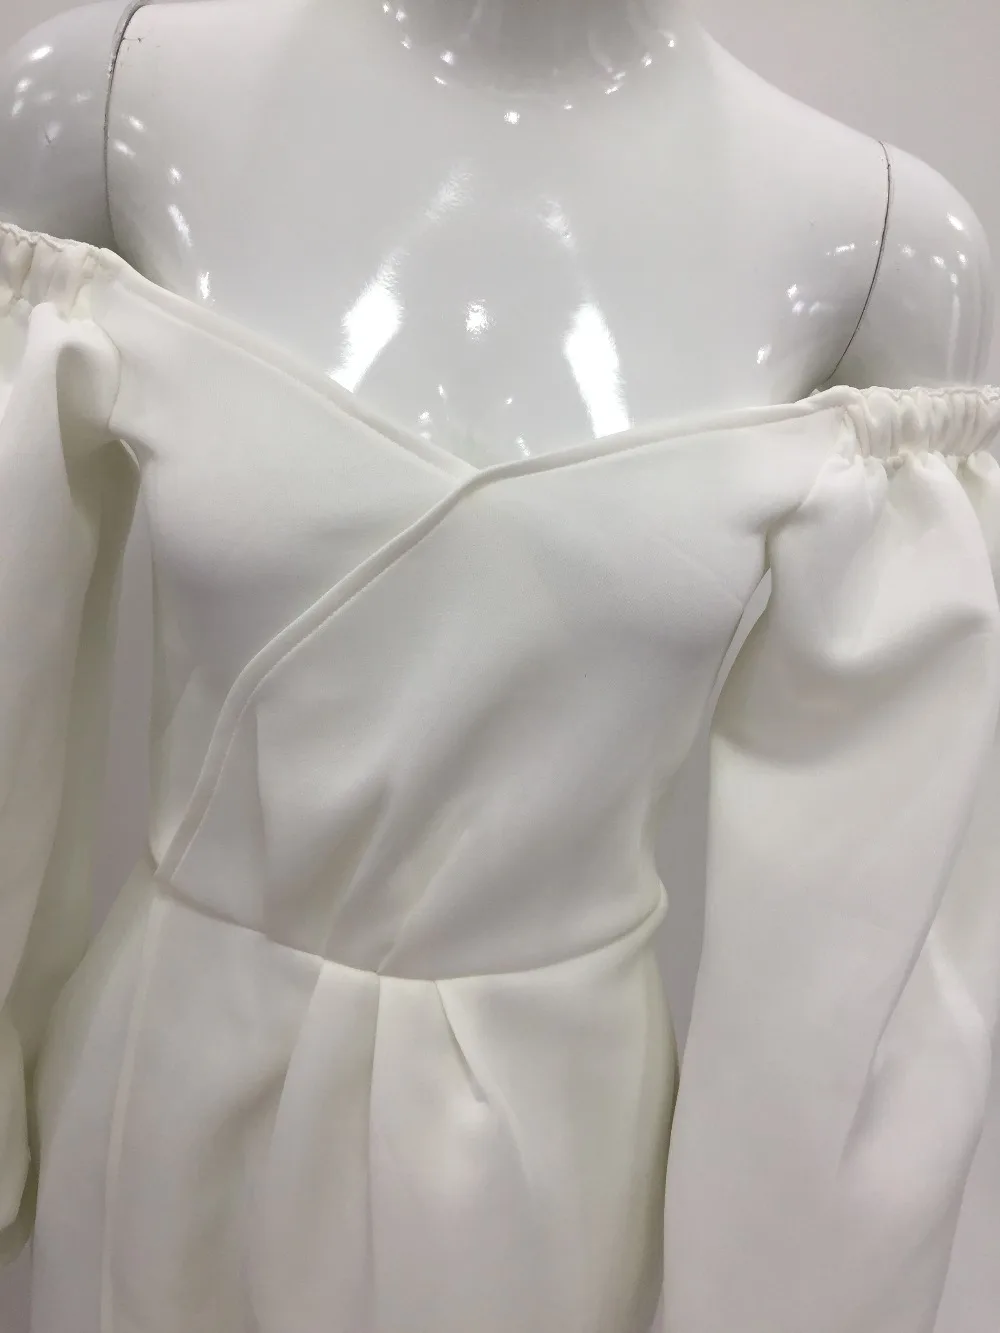 Белое Женское Платье макси с высоким разрезом,, сексуальный сарафан с открытыми плечами, вечерние, элегантные, летние, модные, сплошные, v-образный вырез, длинные платья